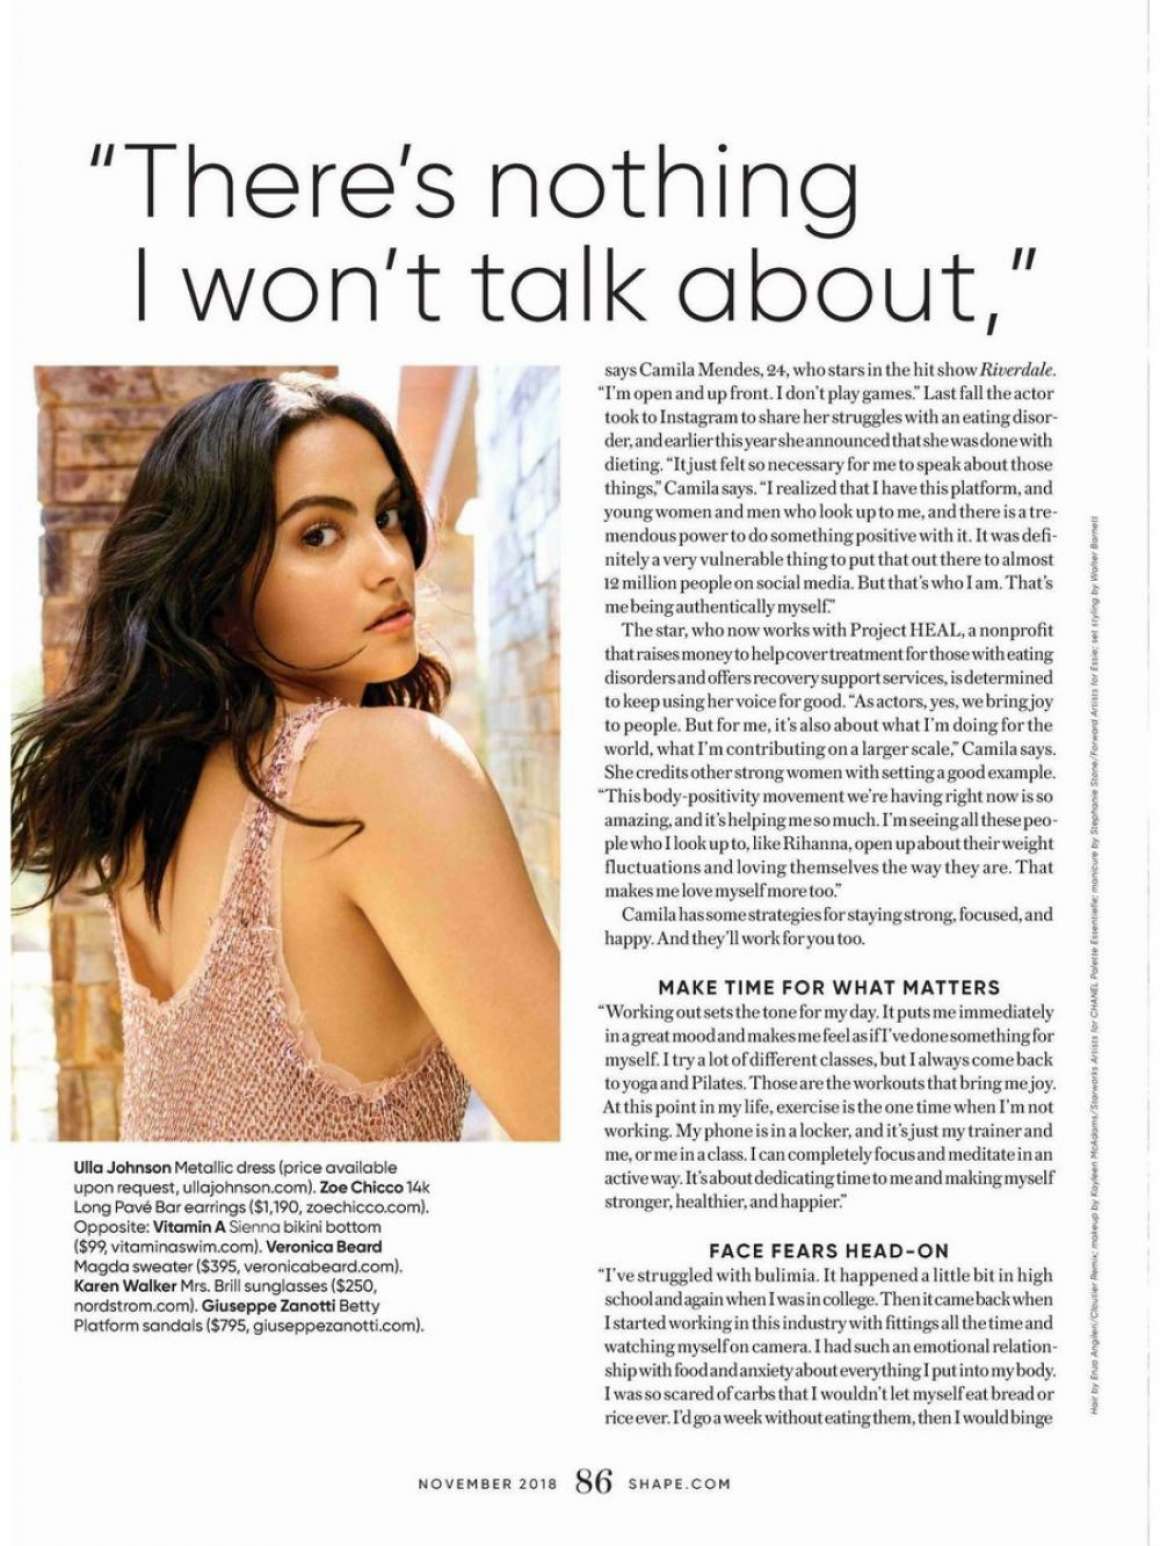 Camila Mendes for Shape Magazine (November 2018)